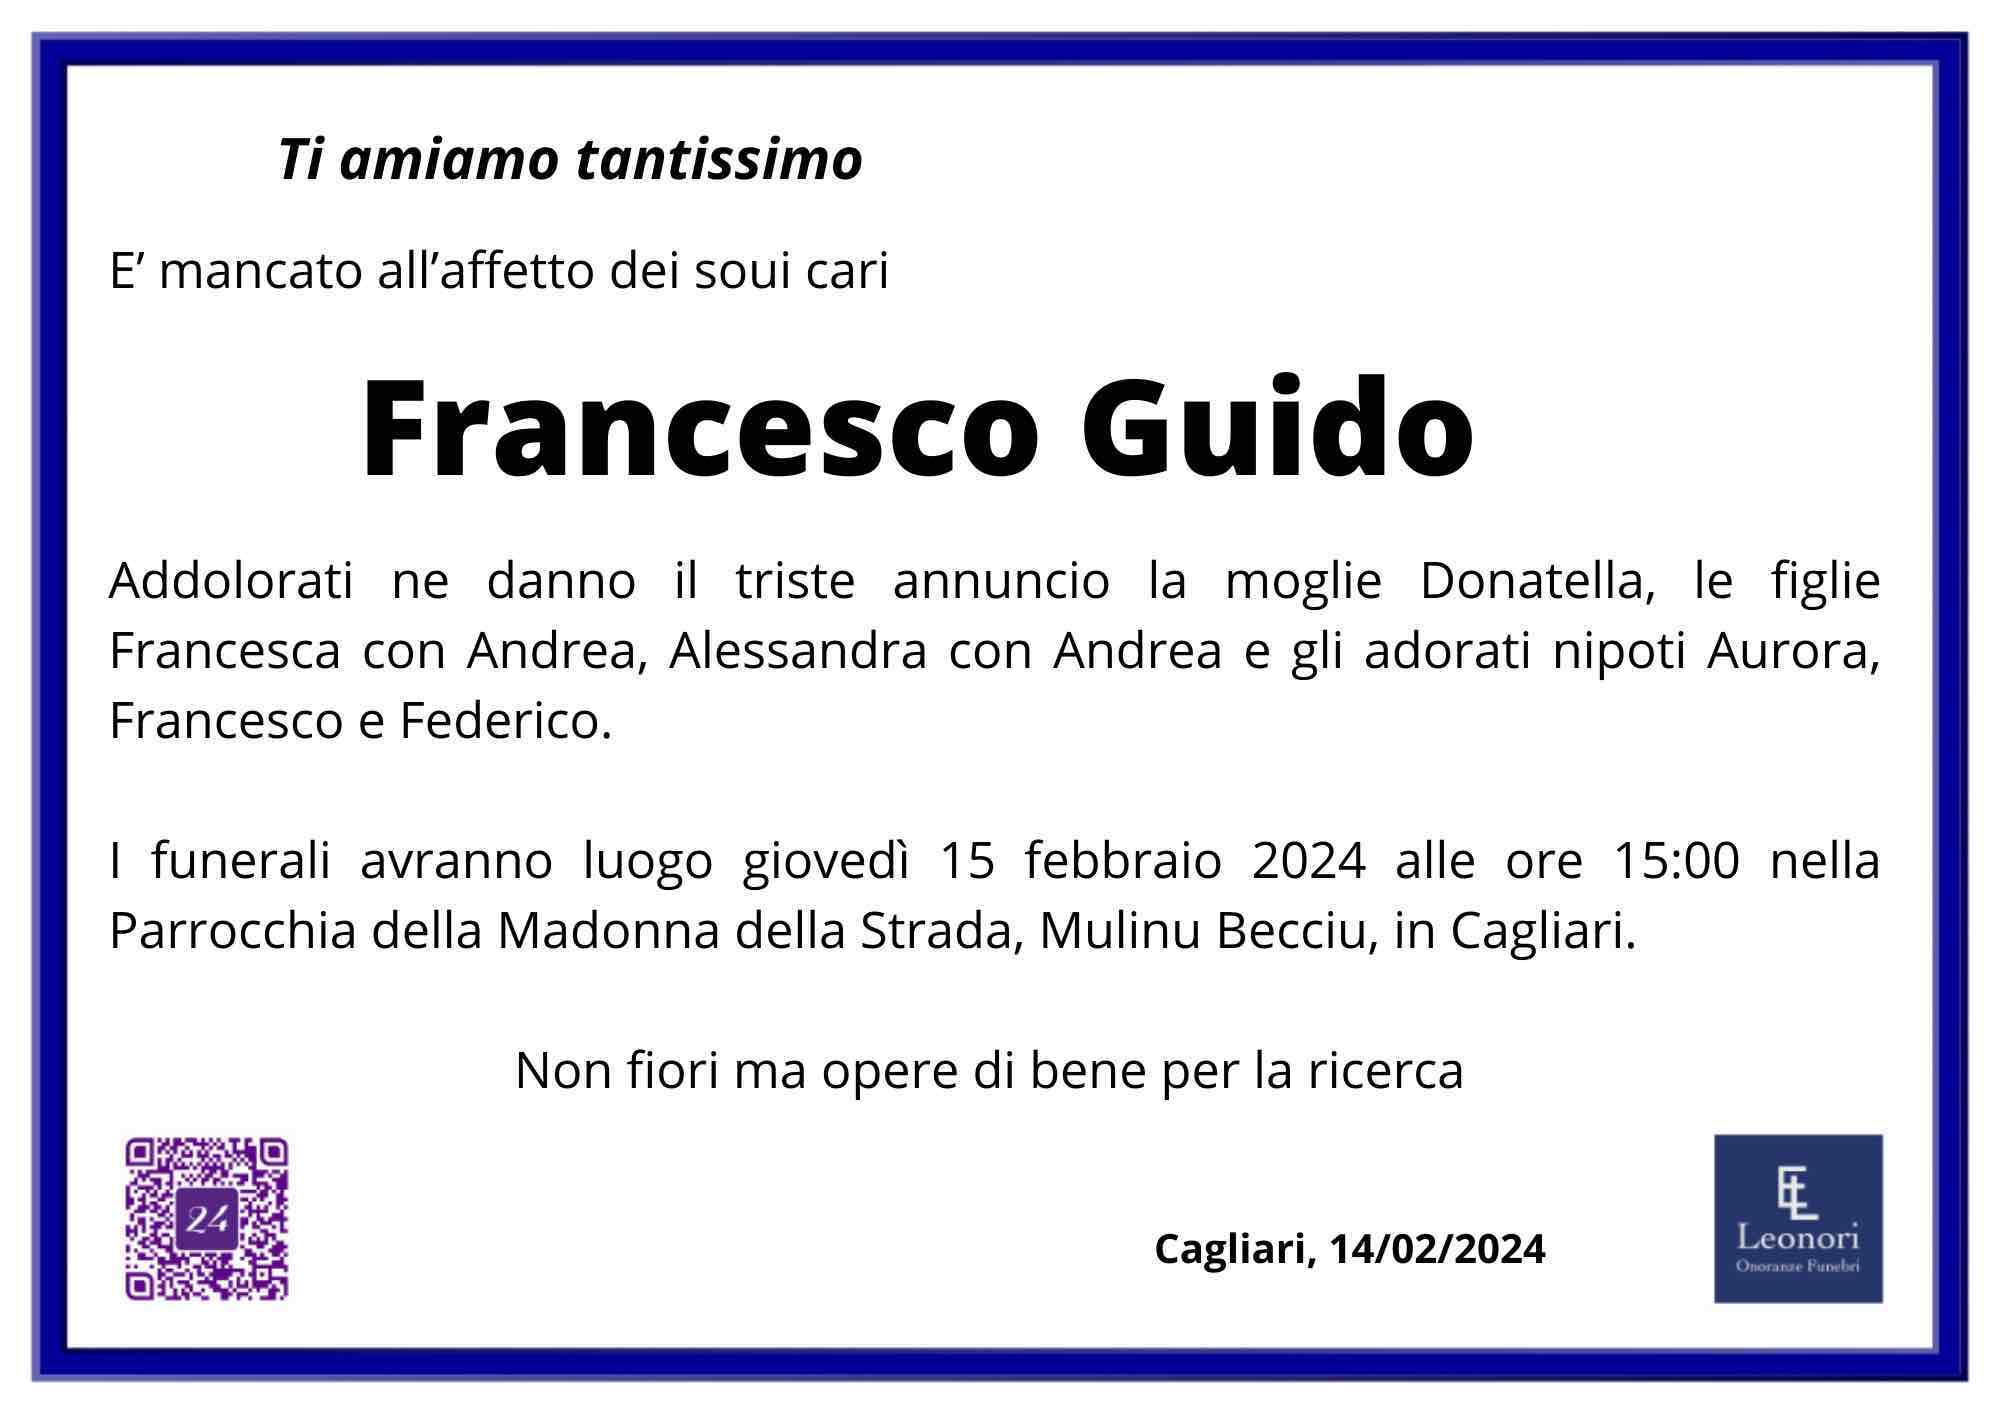 Francesco Guido